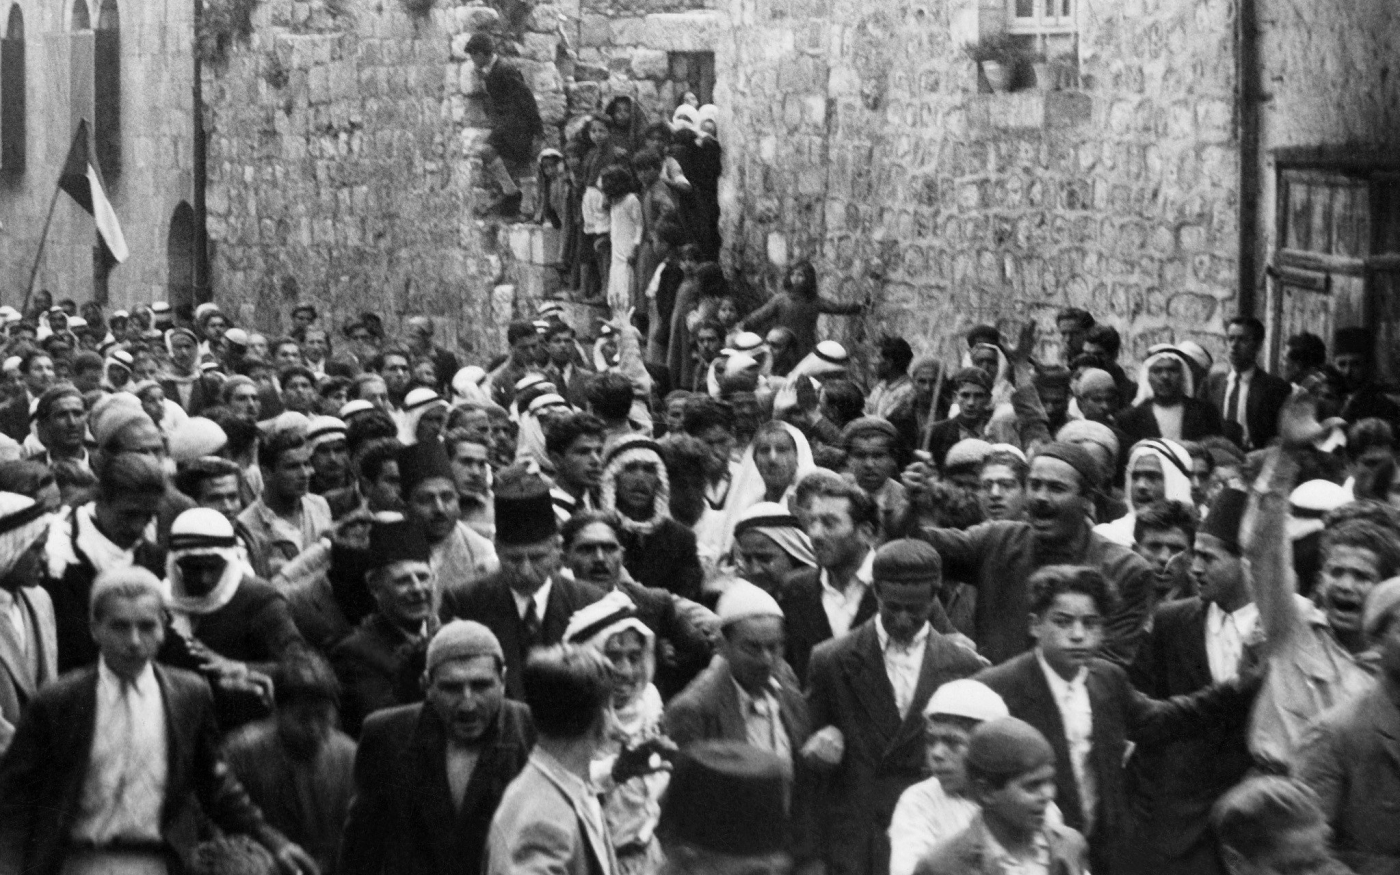 Une photo datée d’avant 1937 pendant le mandat britannique en Palestine montre des Arabes manifestant dans la vieille ville de Jérusalem contre l’immigration juive (AFP)